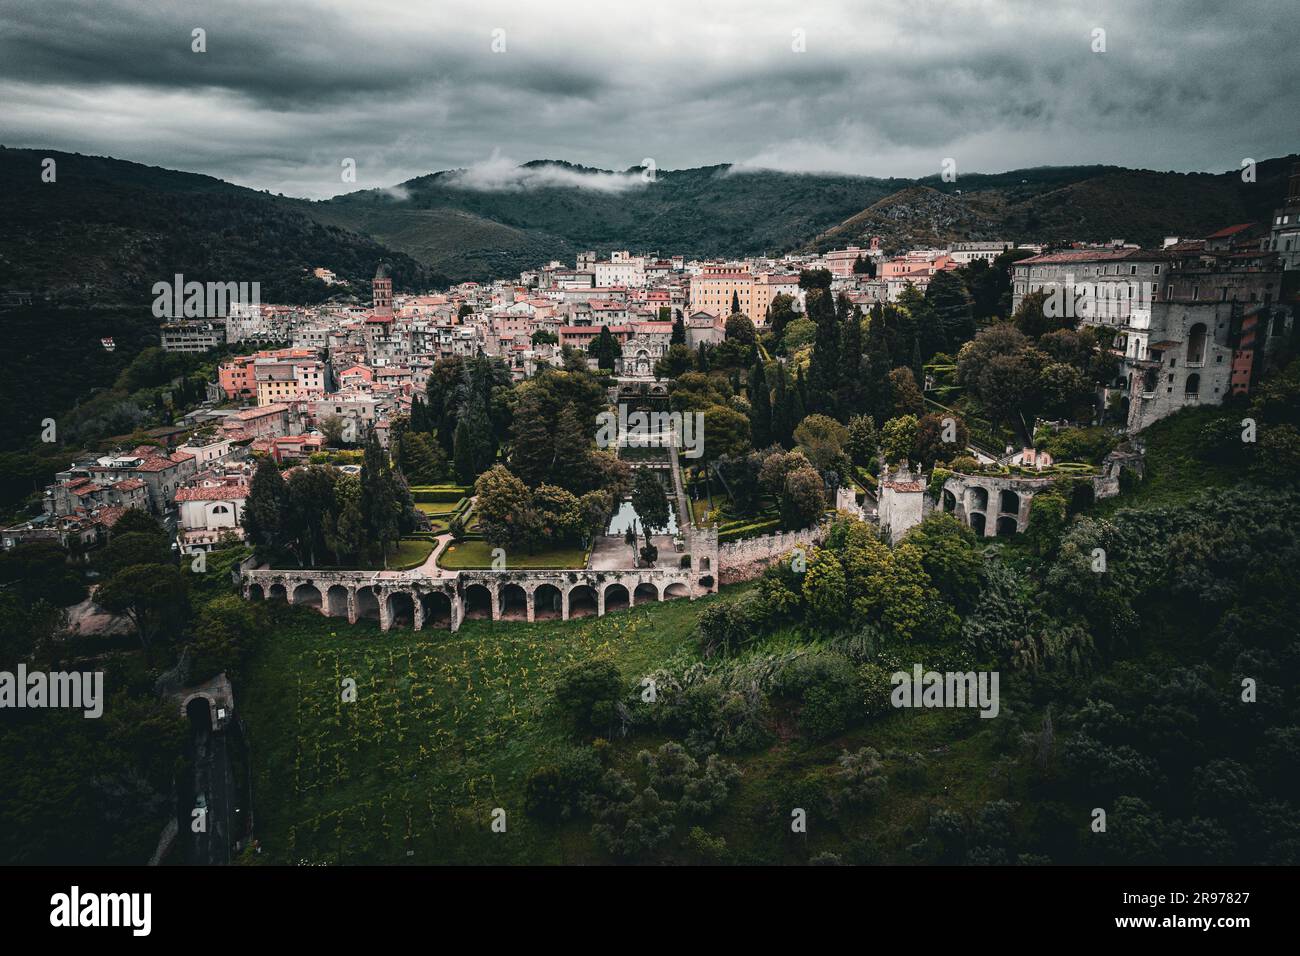 Una vista aerea della storica città di Tivoli circondata dalle montagne in Italia Foto Stock